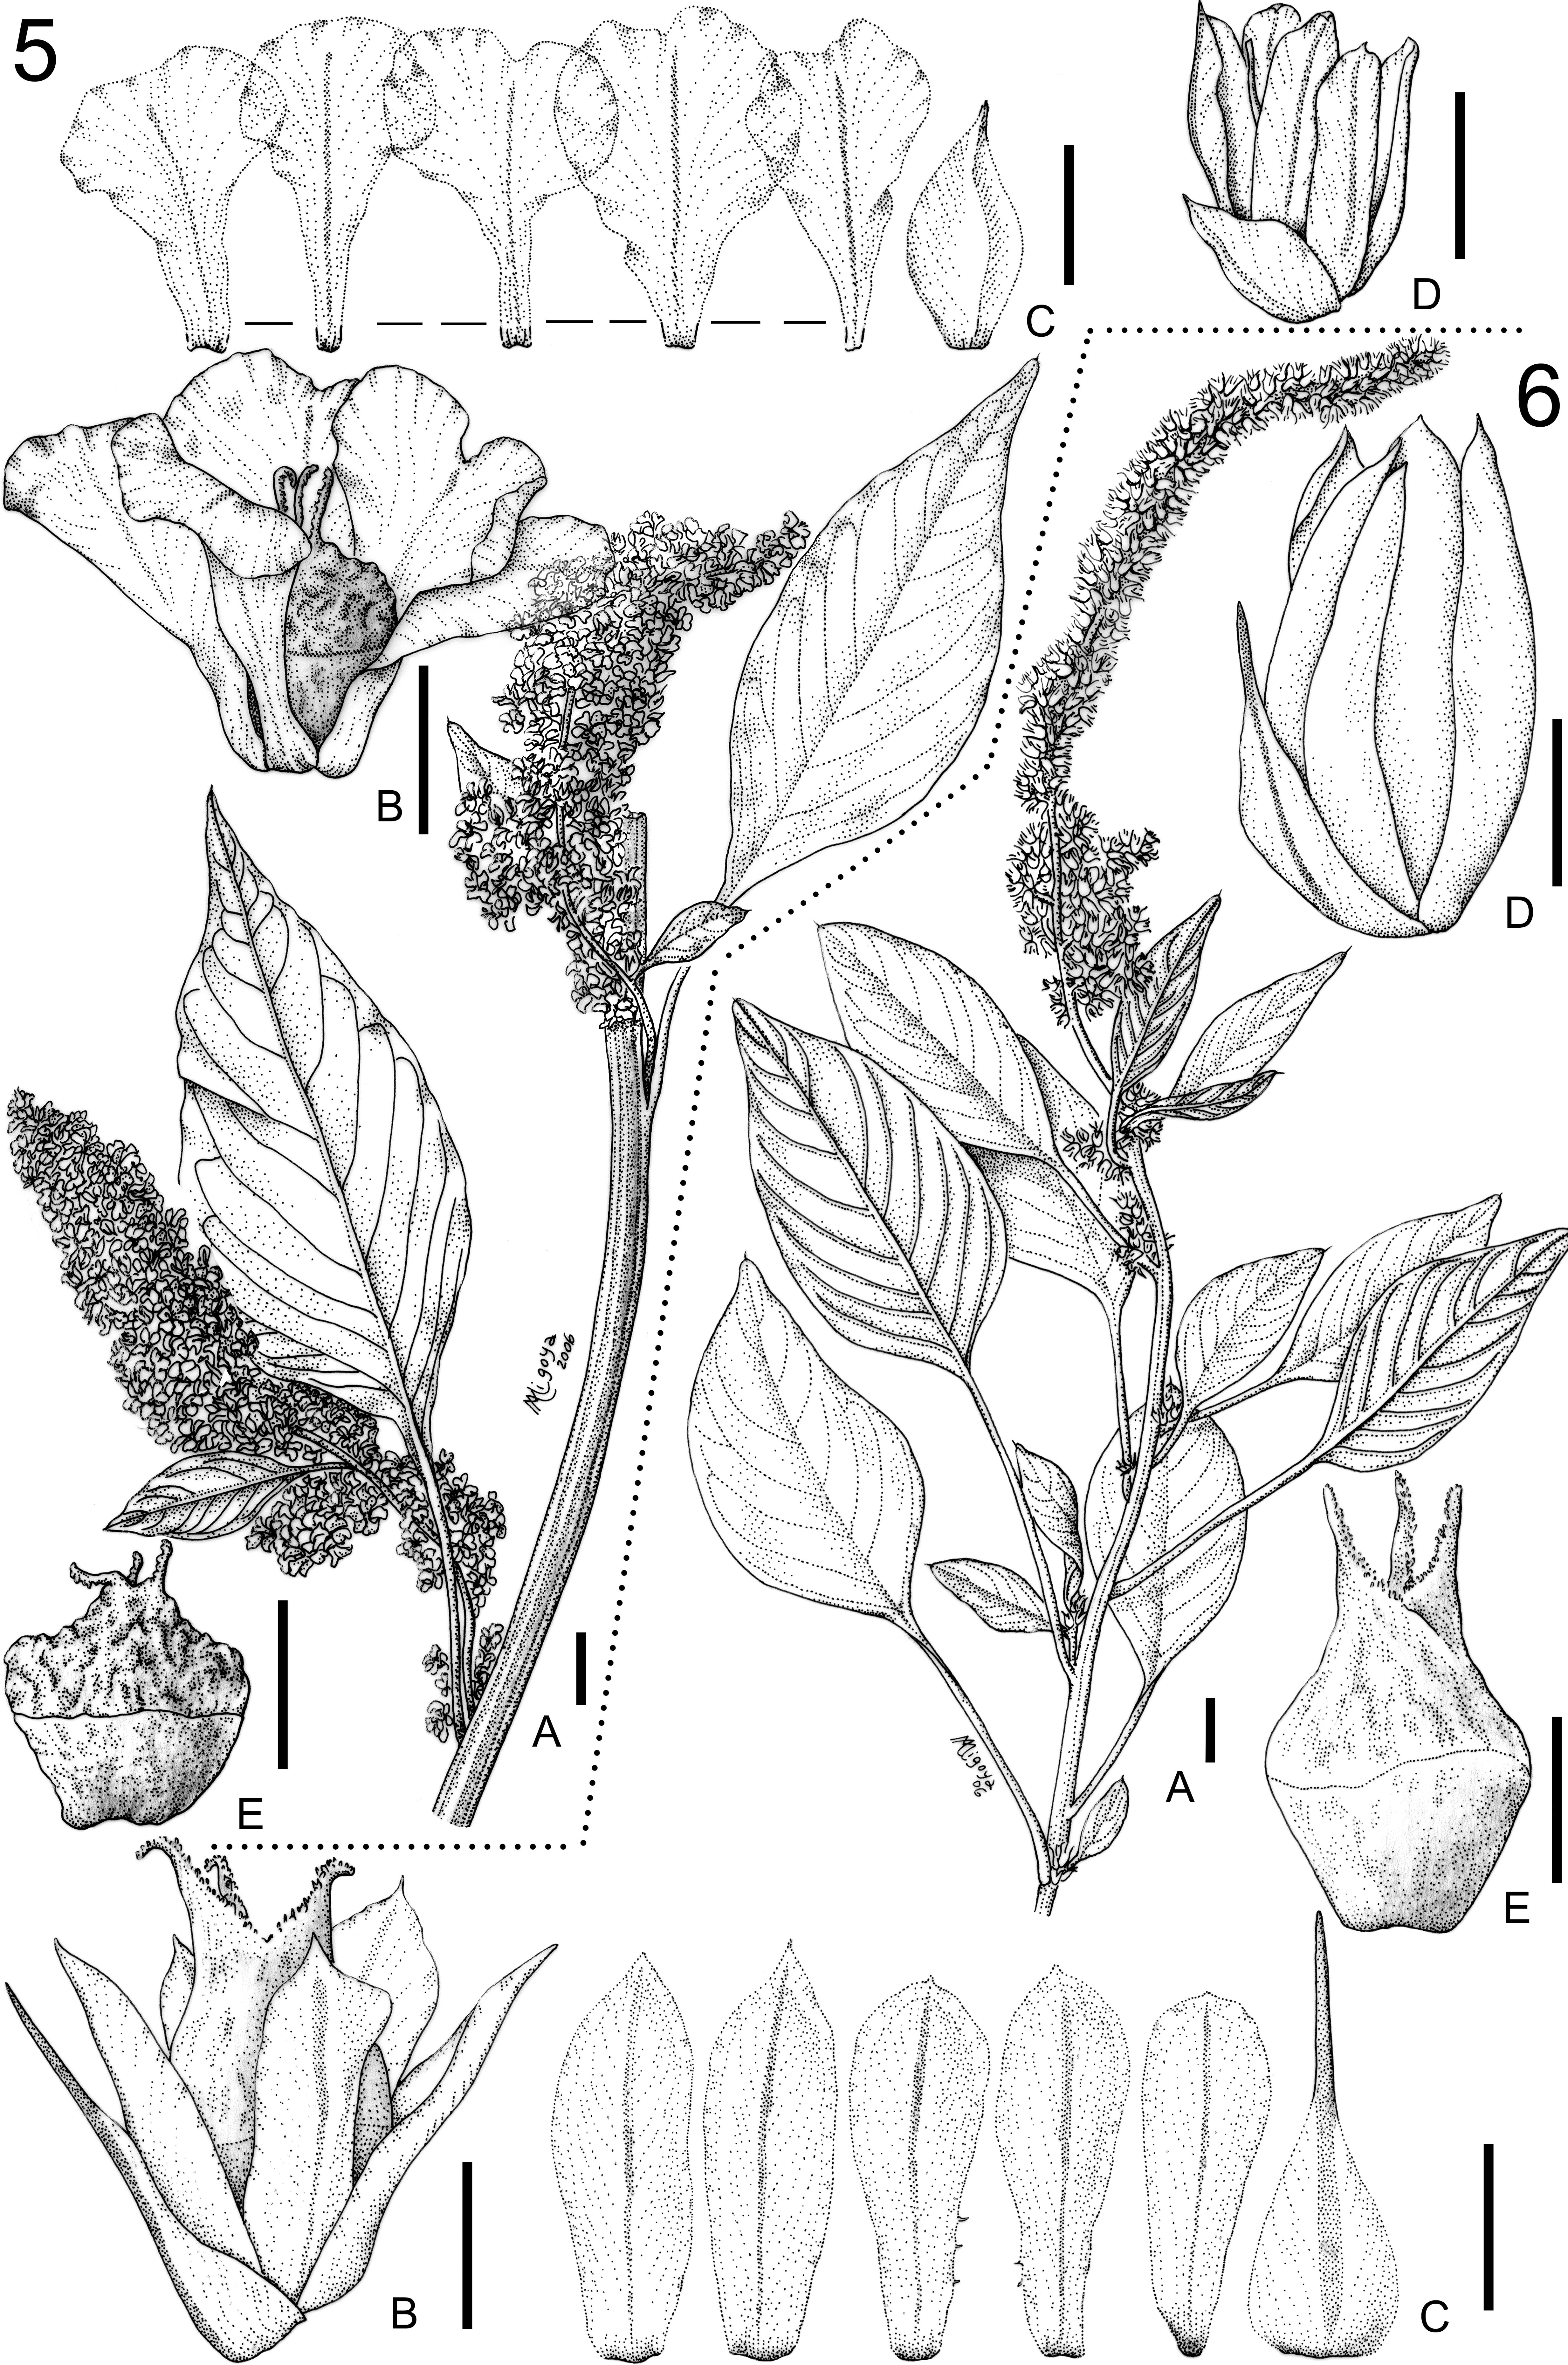 Revisión Taxonómica de las Especies Monoicas de Amaranthus (Amaranthaceae):  Amaranthus subg. Amaranthus y Amaranthus subg. Albersia1